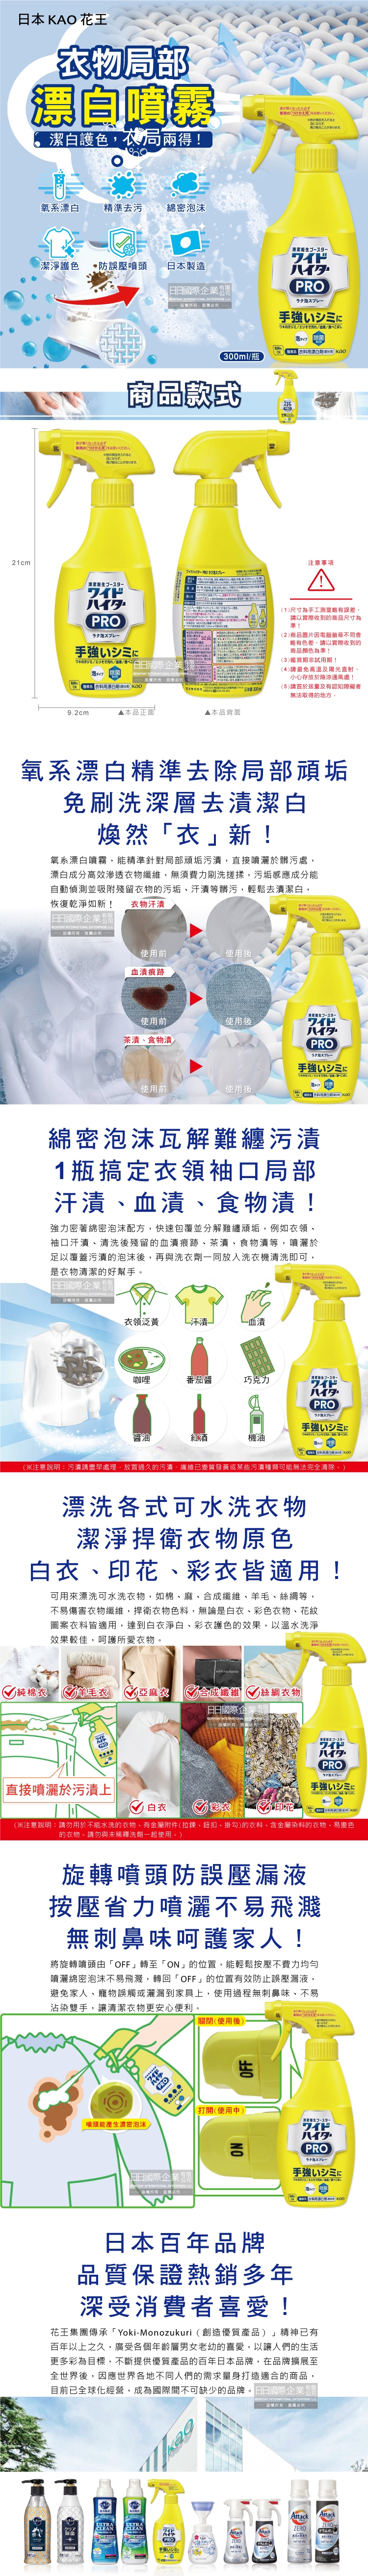 (清潔-衣物)日本KAO花王-PRO衣物局部漂白噴霧300ml黃瓶裝介紹圖